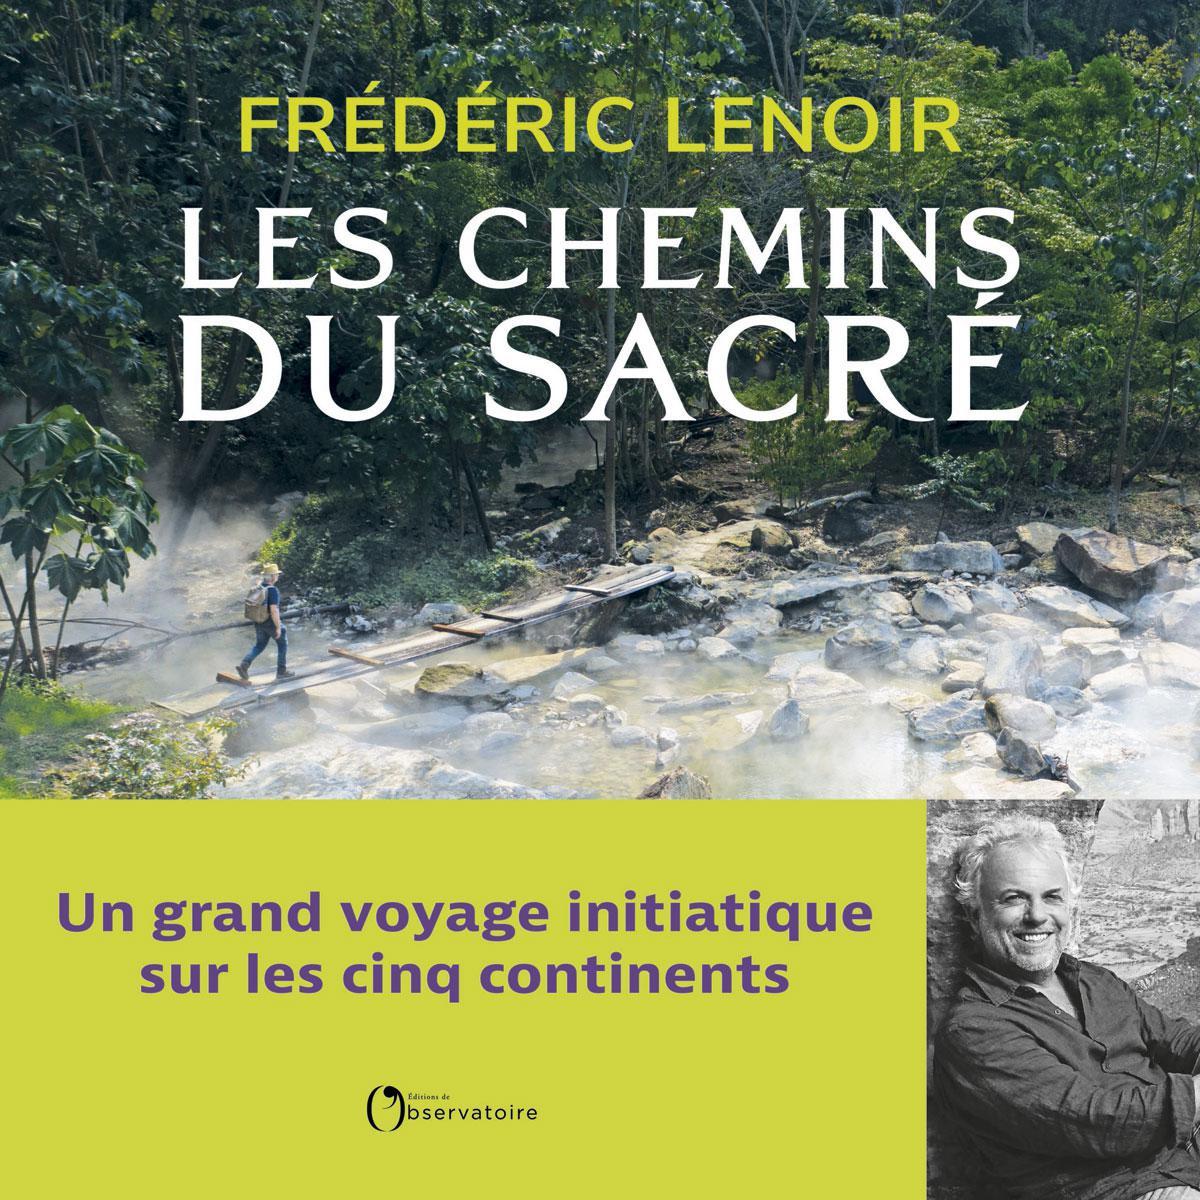 (1) Les Chemins du sacré, par Frédéric Lenoir, éd. de l'Observatoire, 349 p.